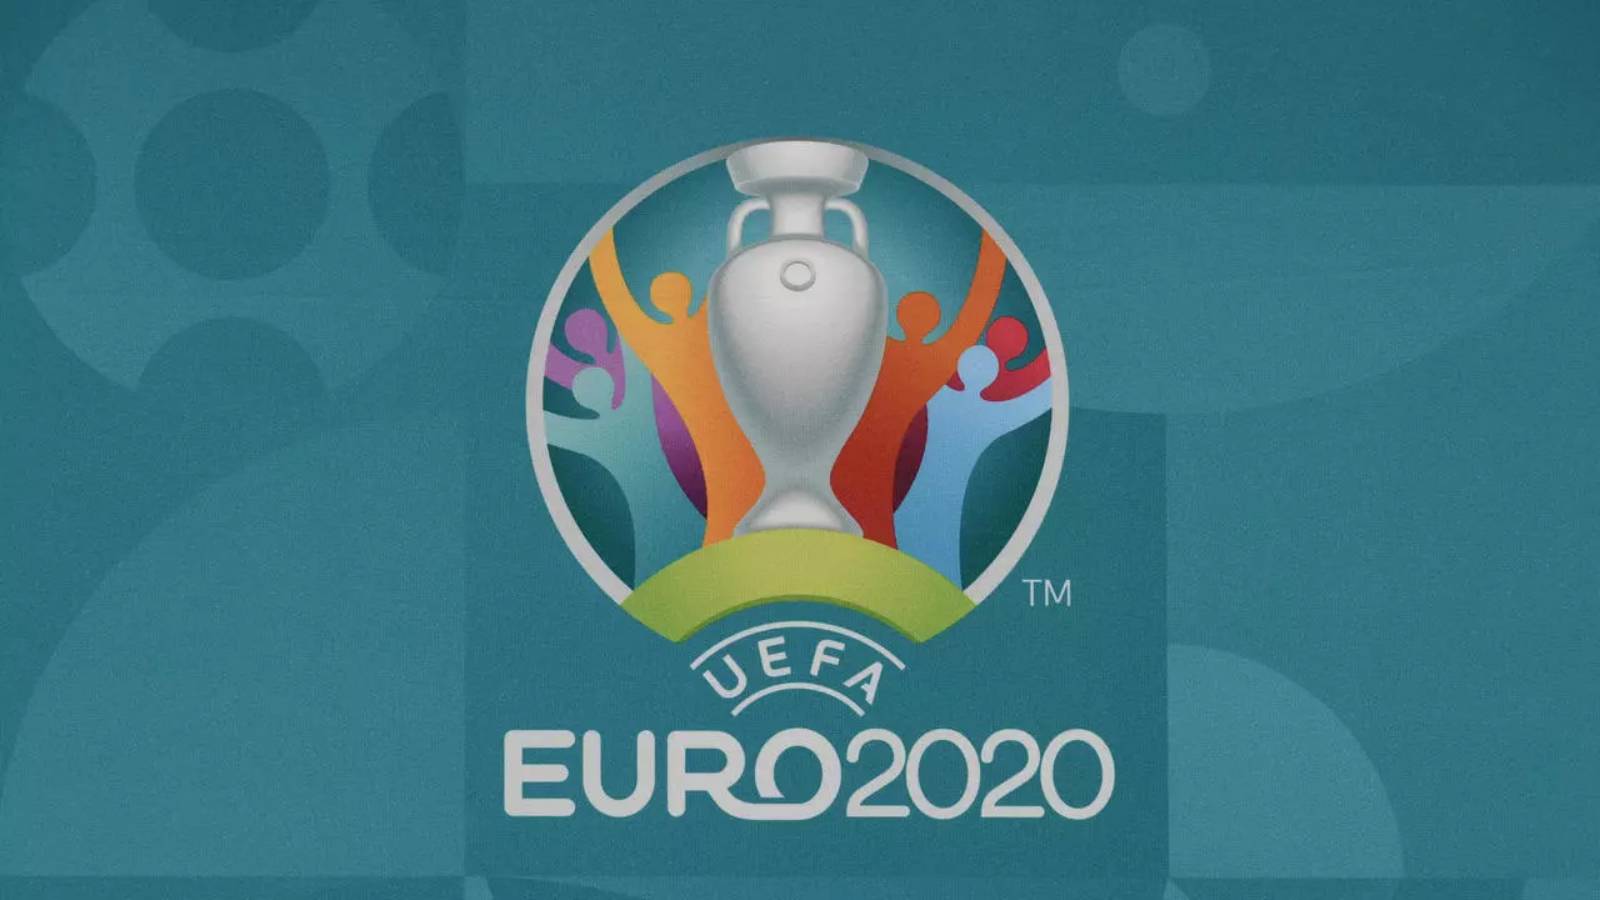 FRF pääsy EURO 2020 National Arena -otteluihin